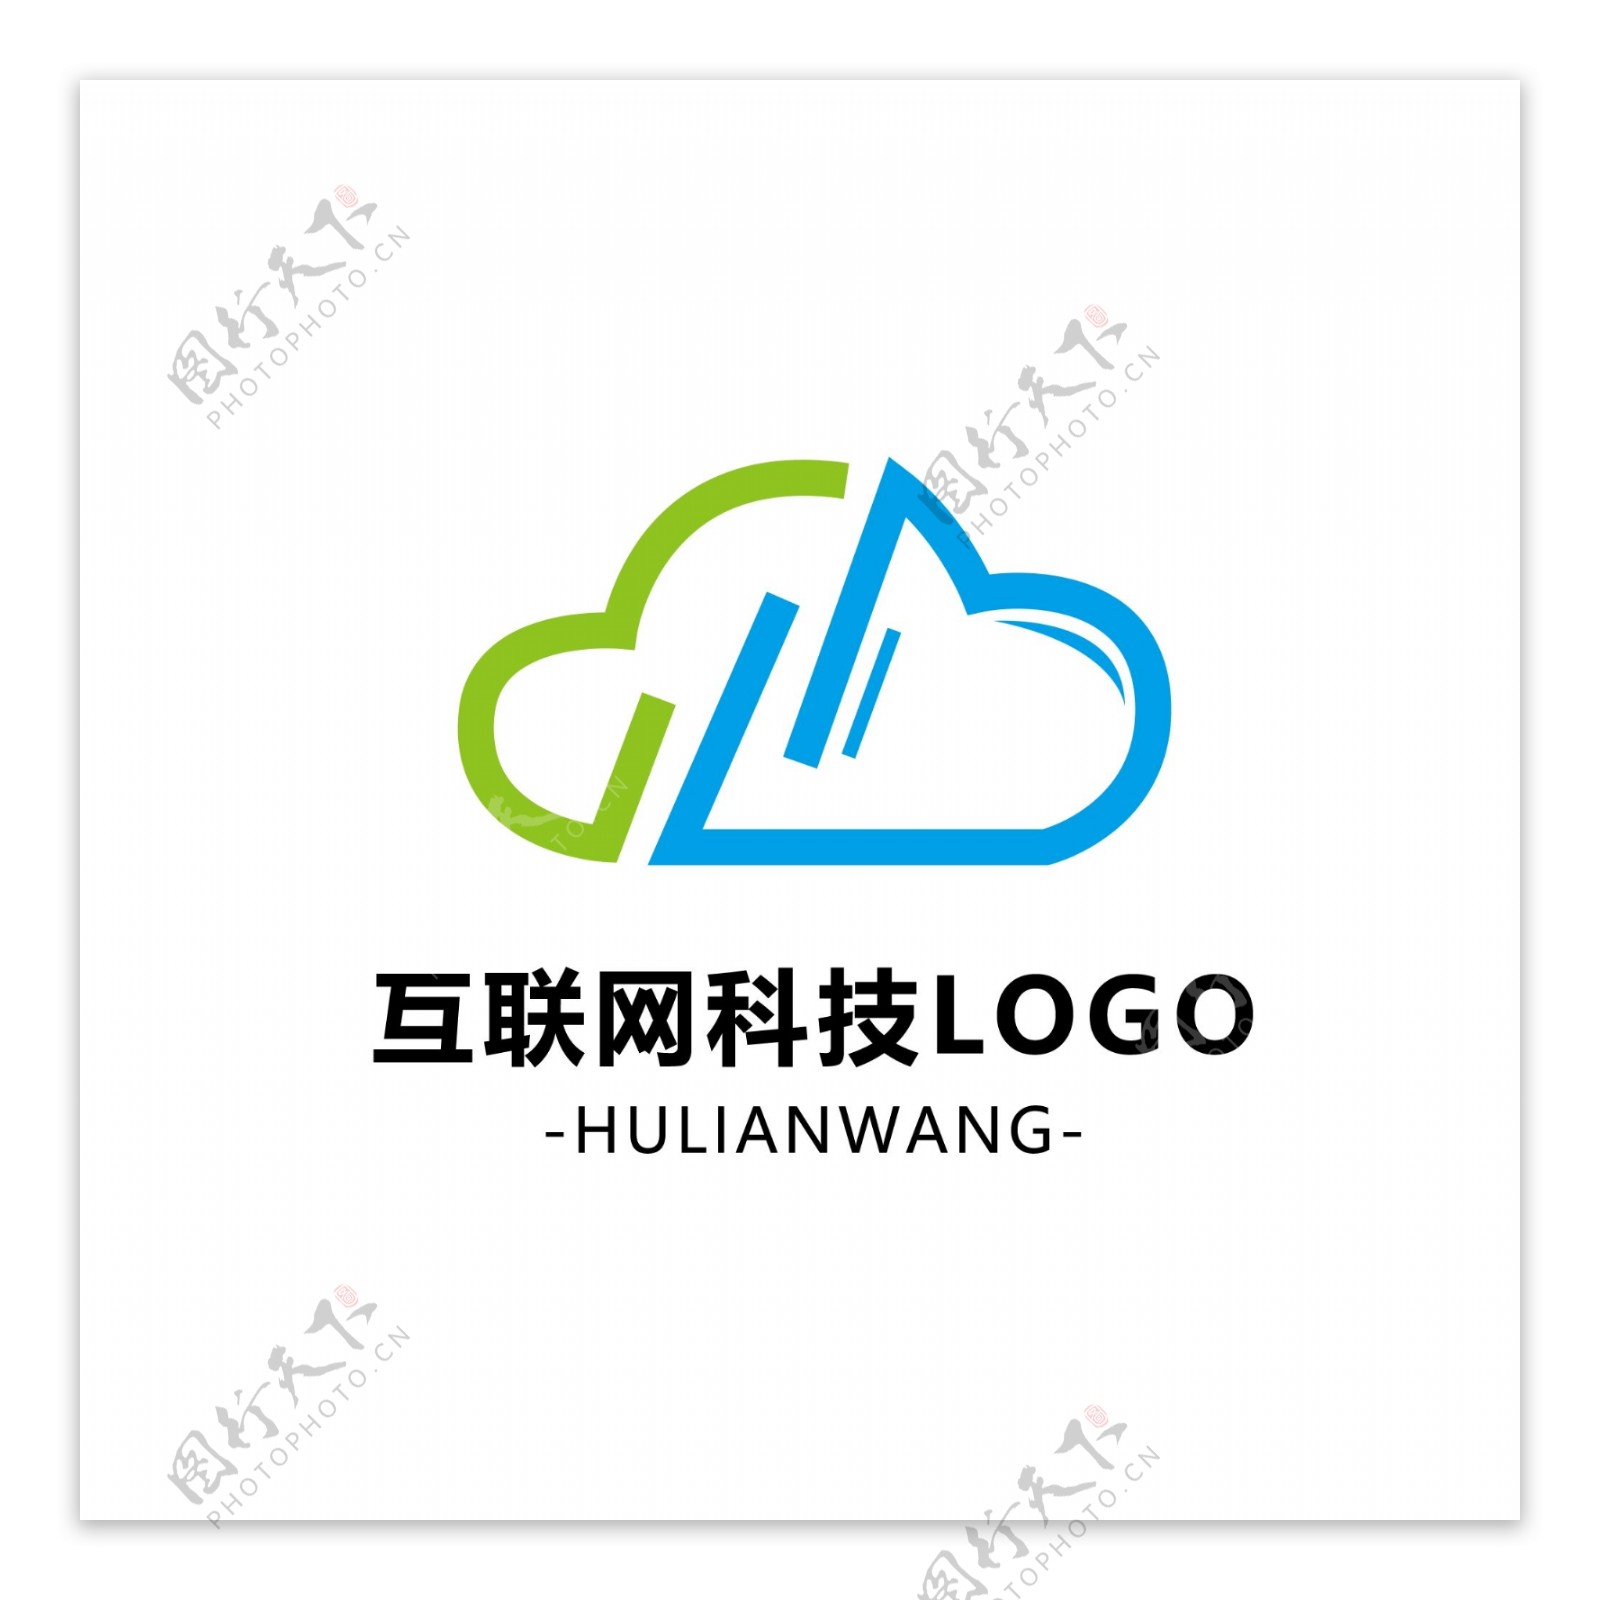 互联网科技logo标识